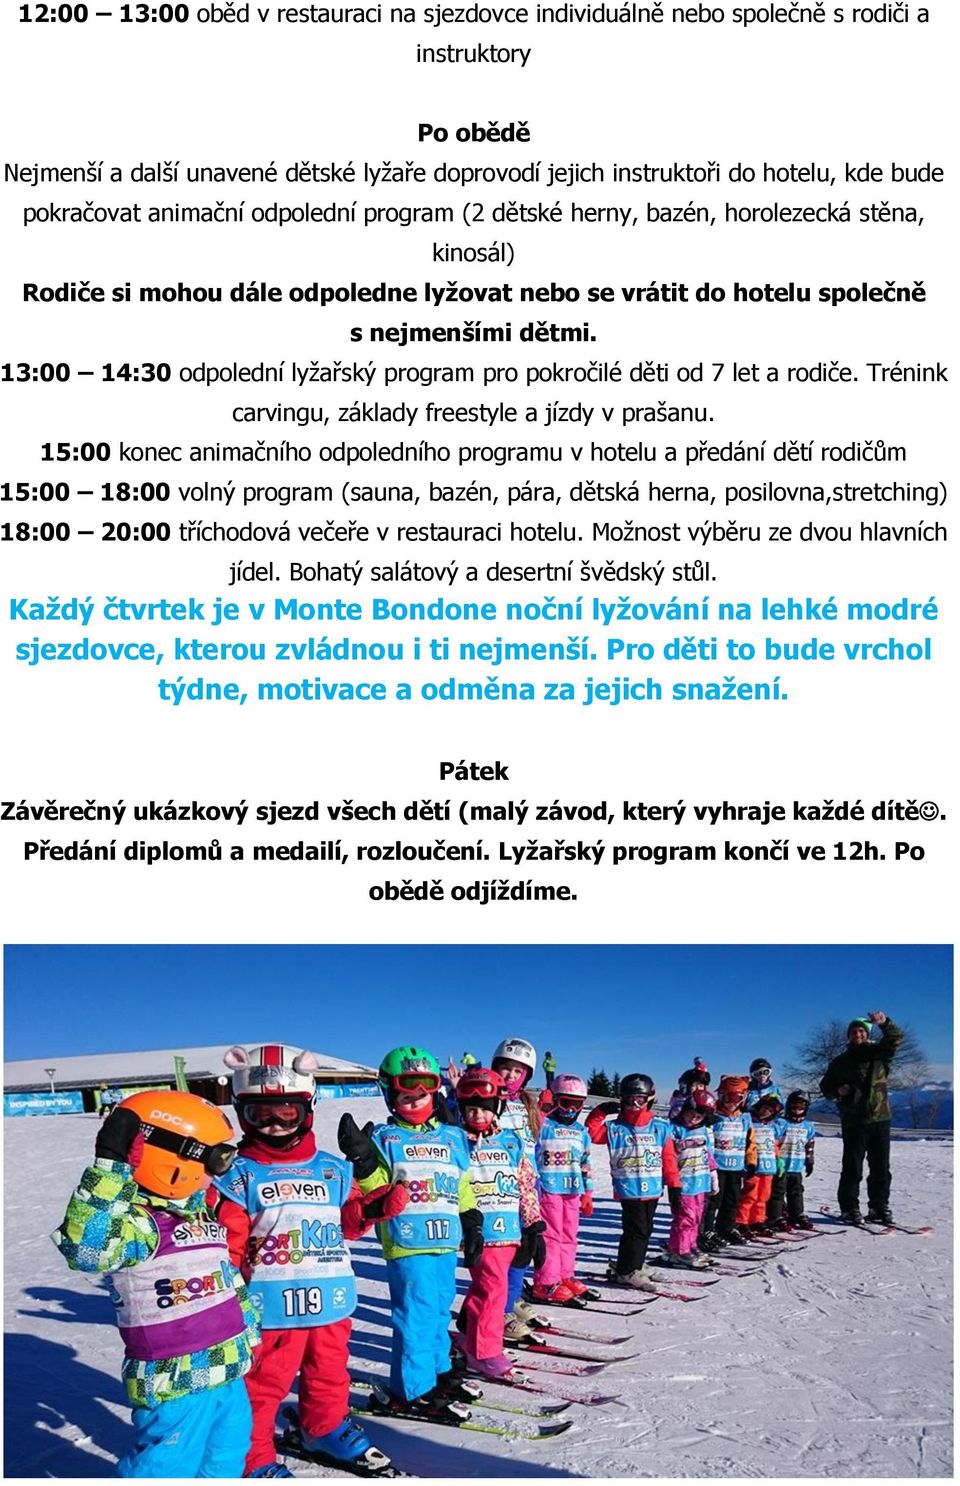 13:00 14:30 odpolední lyžařský program pro pokročilé děti od 7 let a rodiče. Trénink carvingu, základy freestyle a jízdy v prašanu.